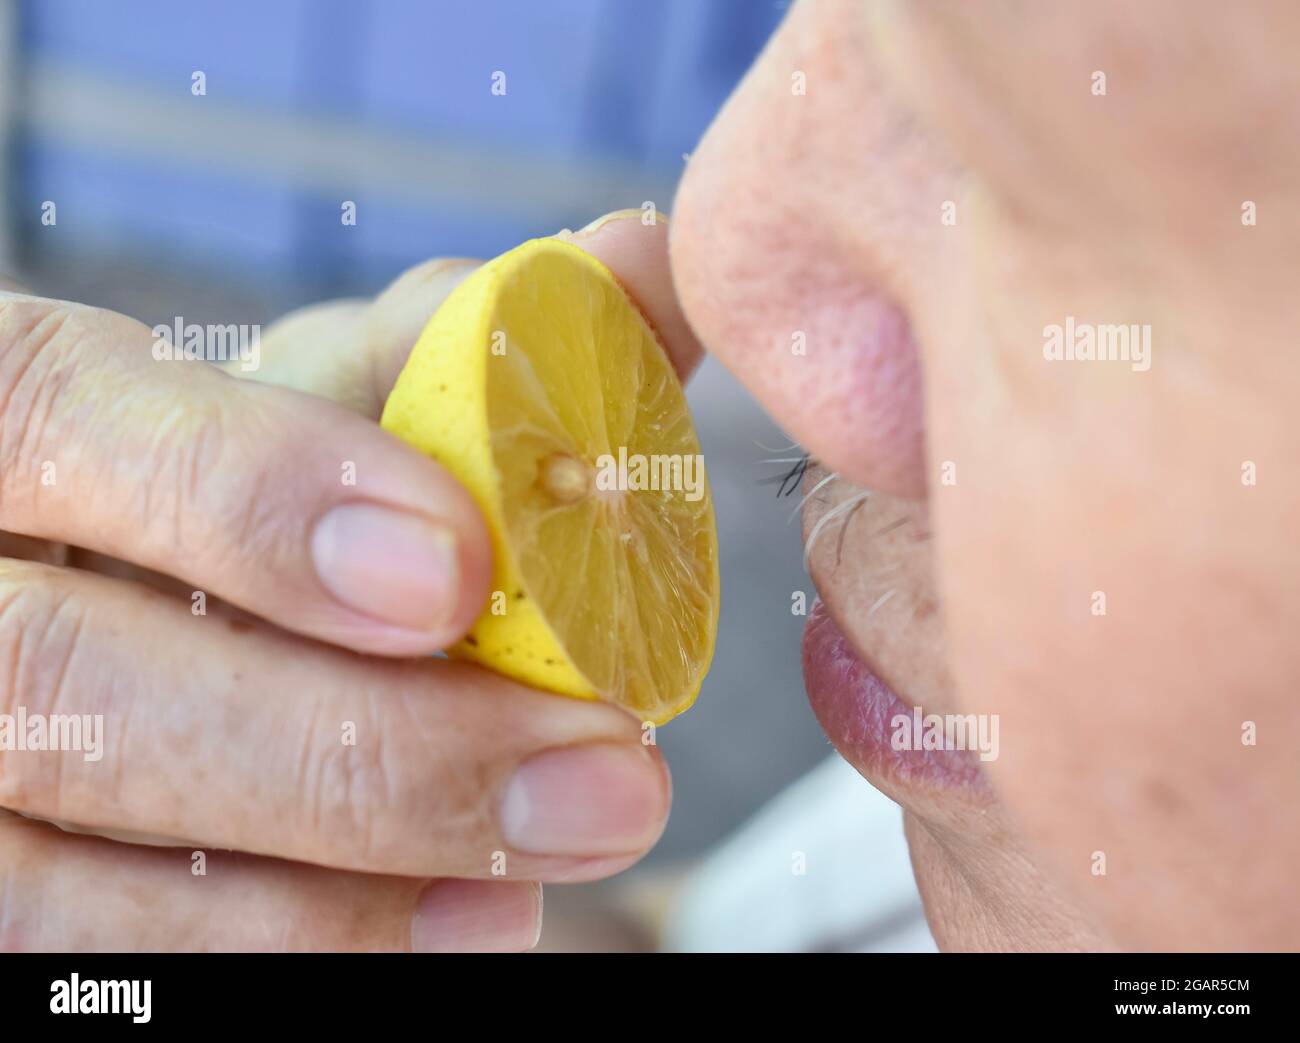 L'anziano del sud-est asiatico, cinese e del Myanmar con l'influenza fredda ottiene la perdita dell'odore denominata anosmia. Sentiva il profumo del limone mentre si trovava a casa. Primo piano Foto Stock